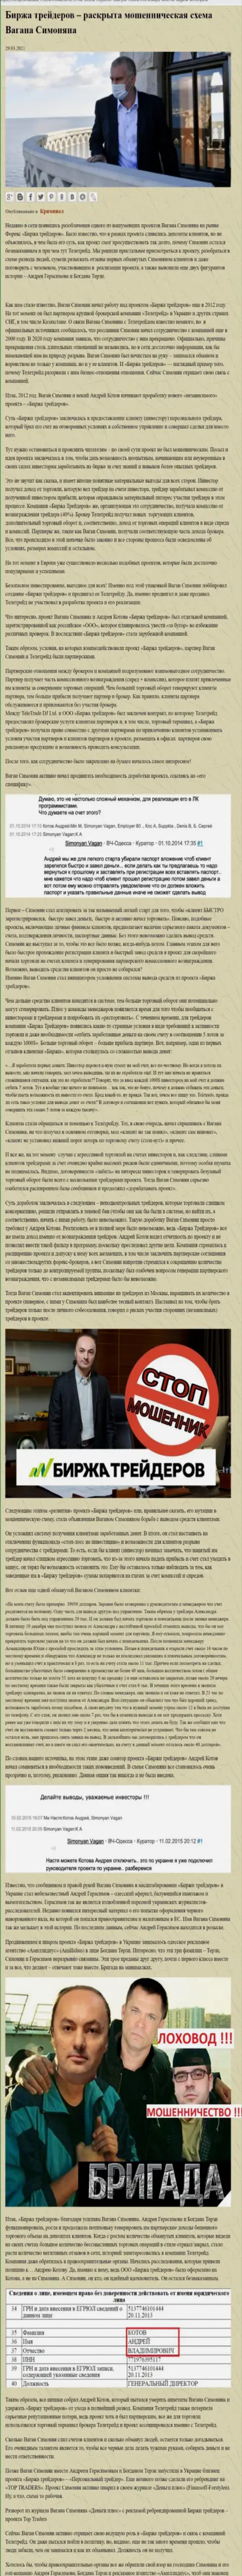 Рекламой конторы Биржа Трейдеров, связанной с мошенниками Tele Trade, также занимался Терзи Богдан